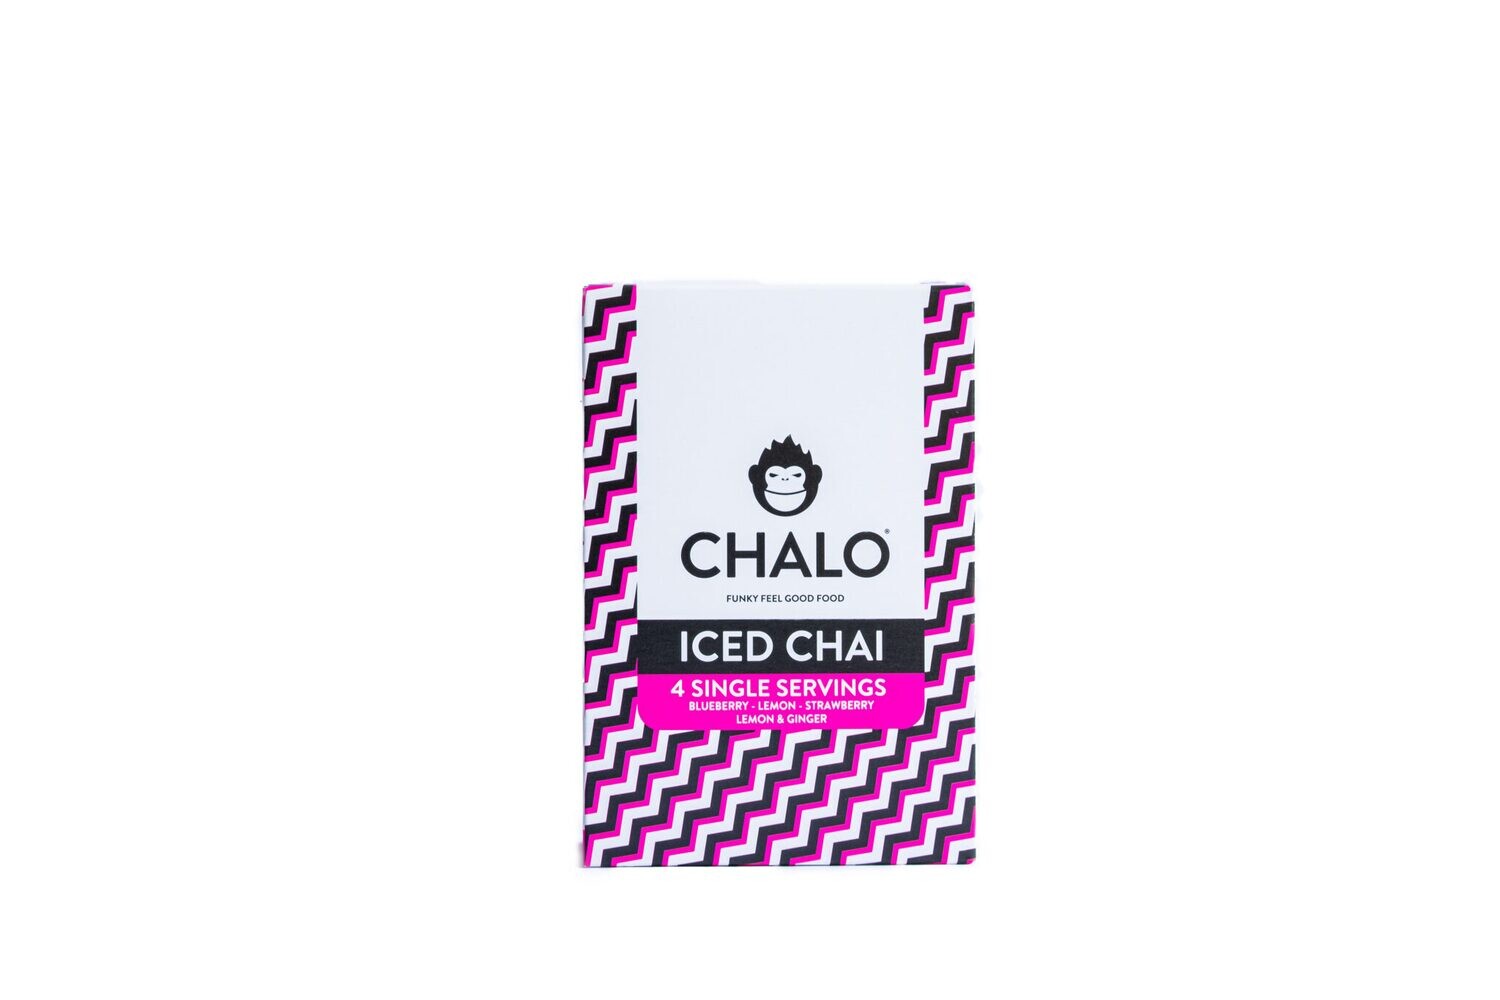 Chalo Iced Chaï ontdekkingsdoos